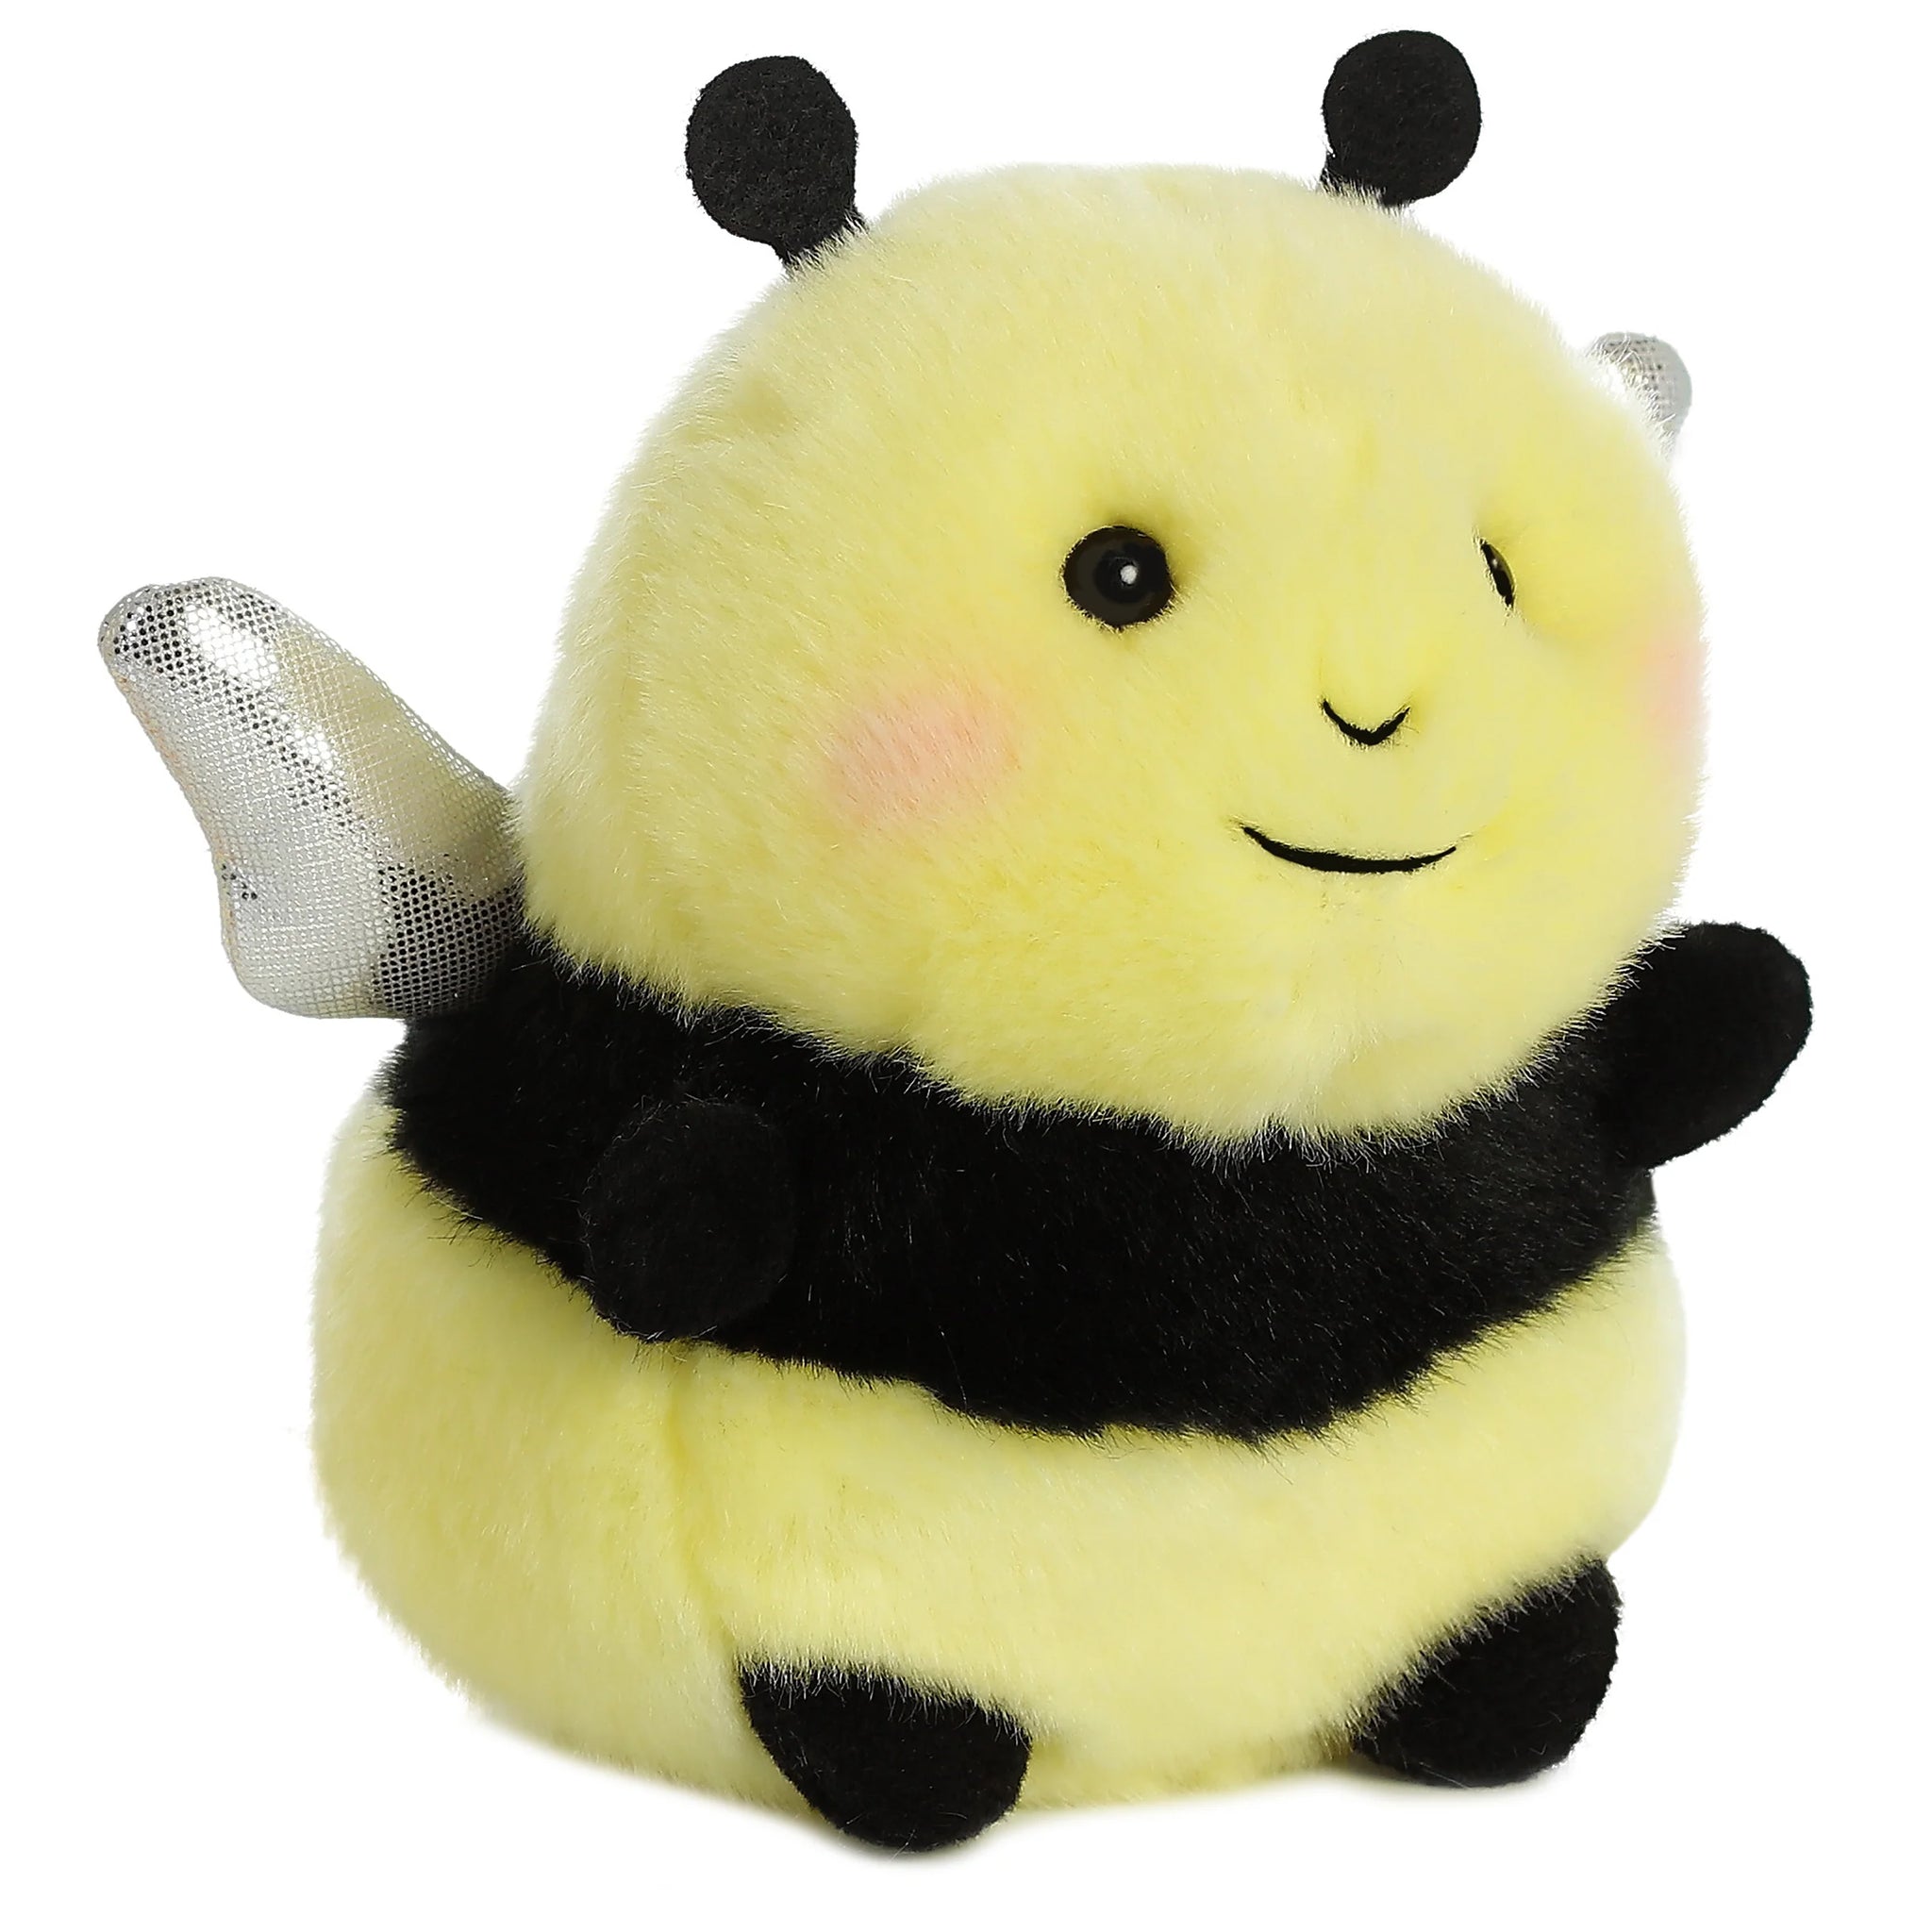 Bumblebee, Bumble Bee, Stuffed Animal, Educational, Plush